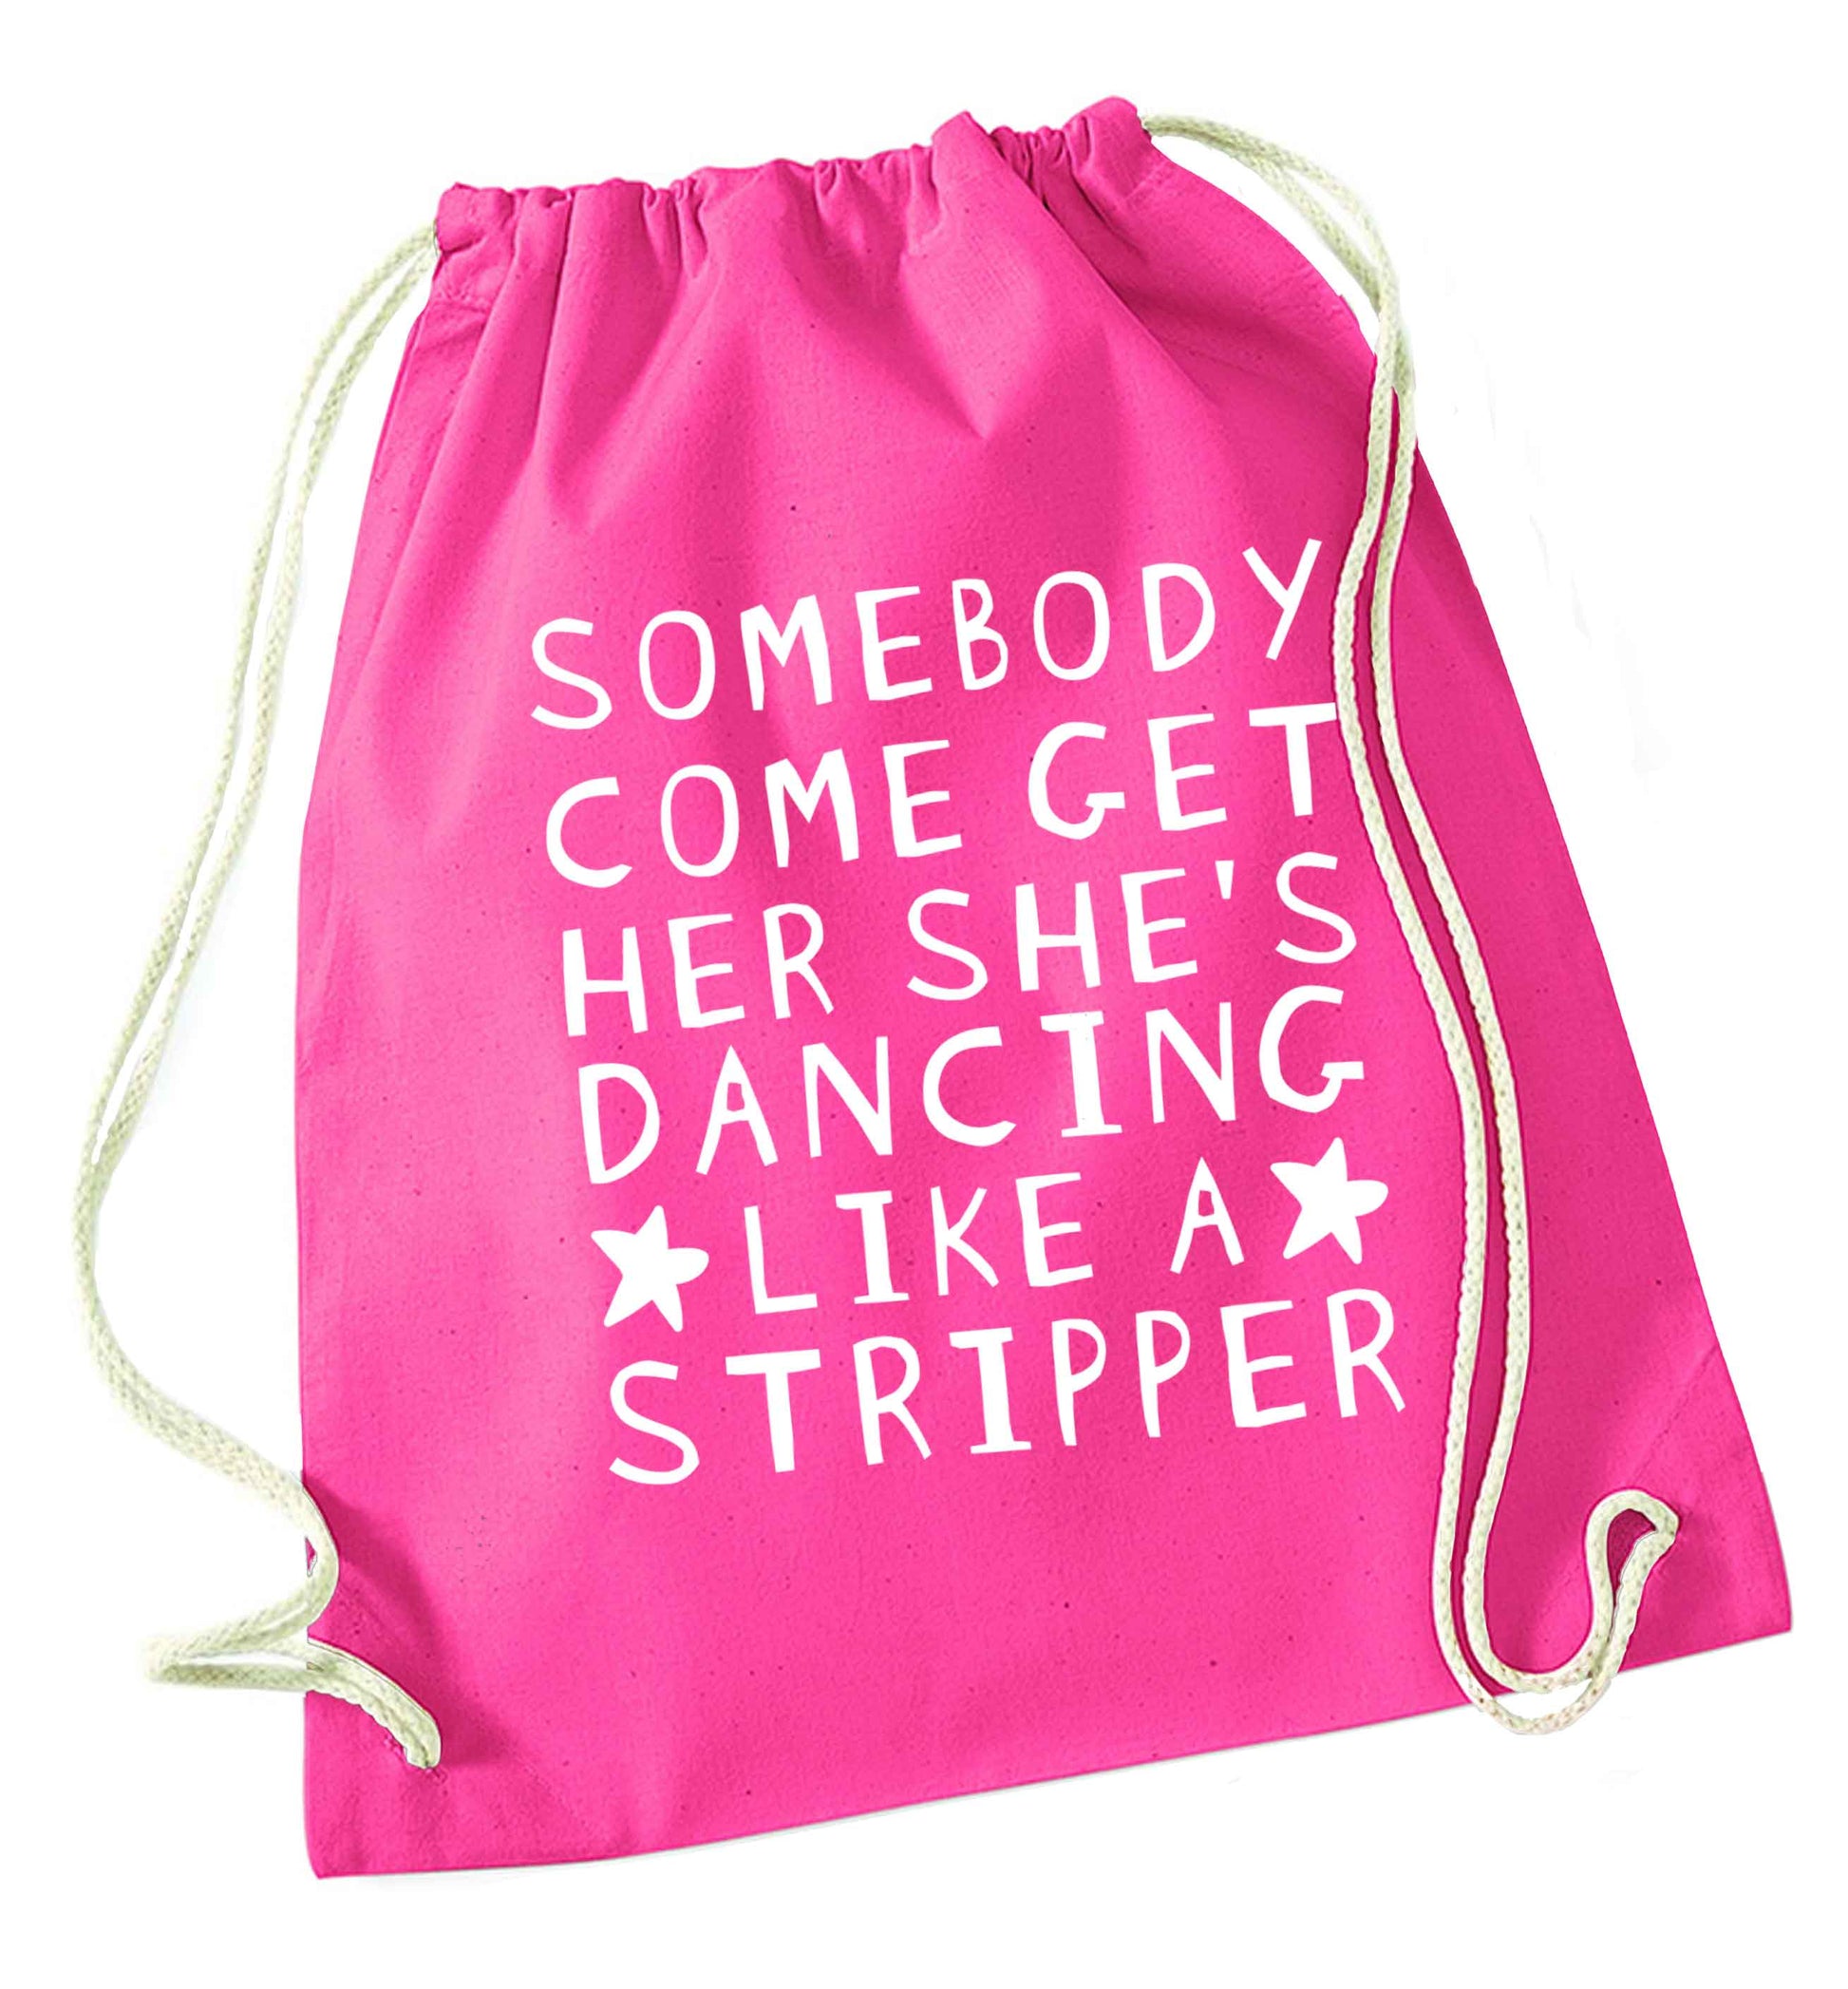 Gen Z funny viral meme  pink drawstring bag